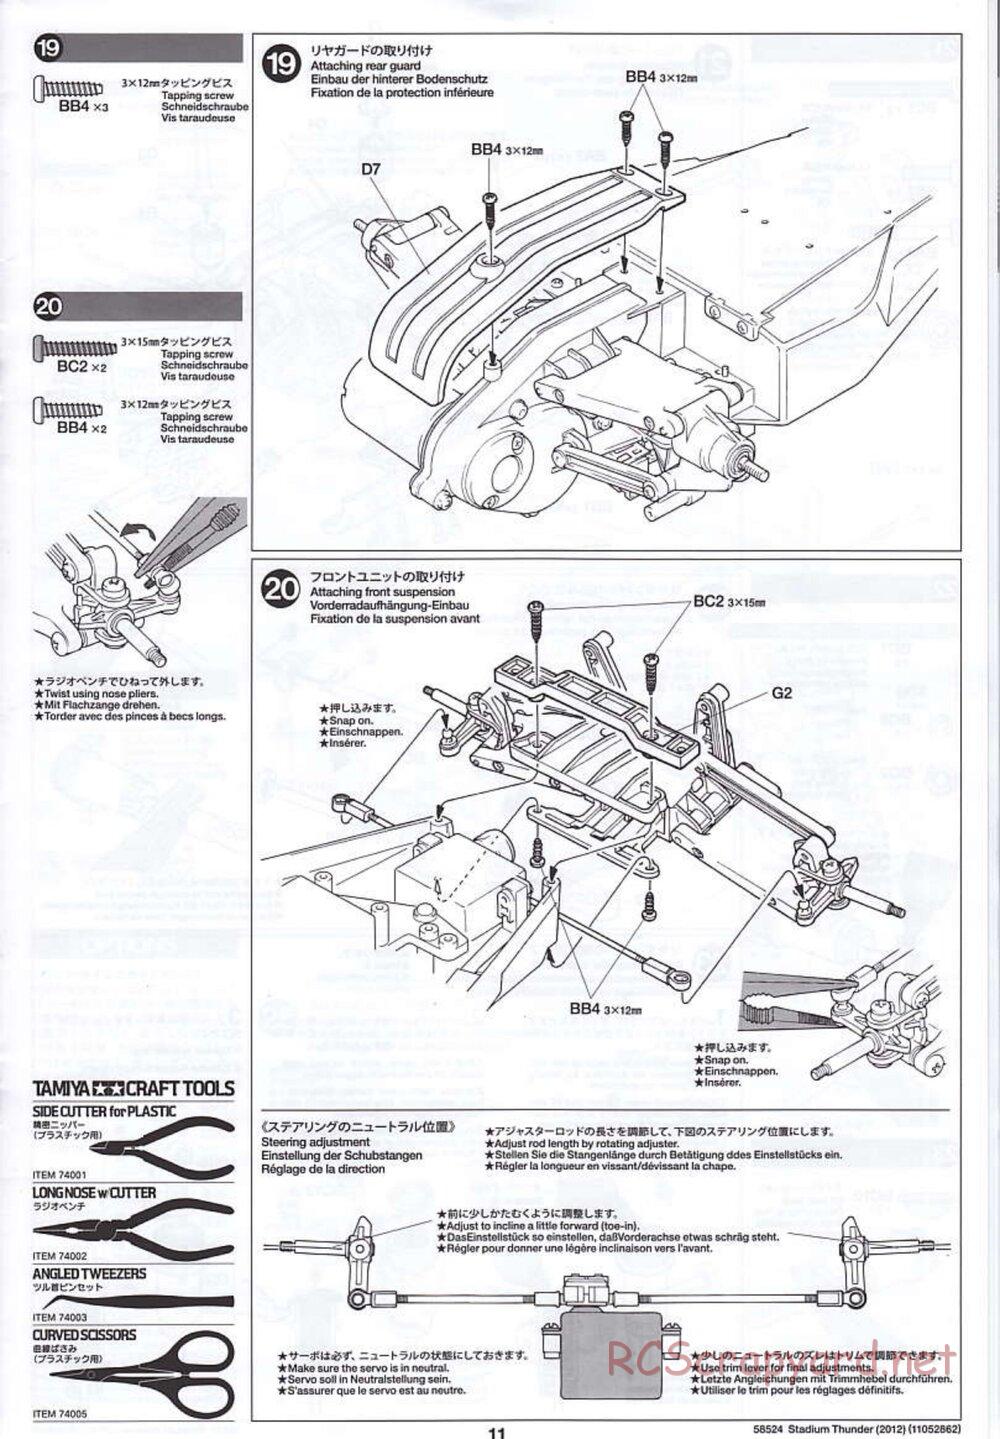 Tamiya - Stadium Thunder 2012 - FAL Chassis - Manual - Page 11